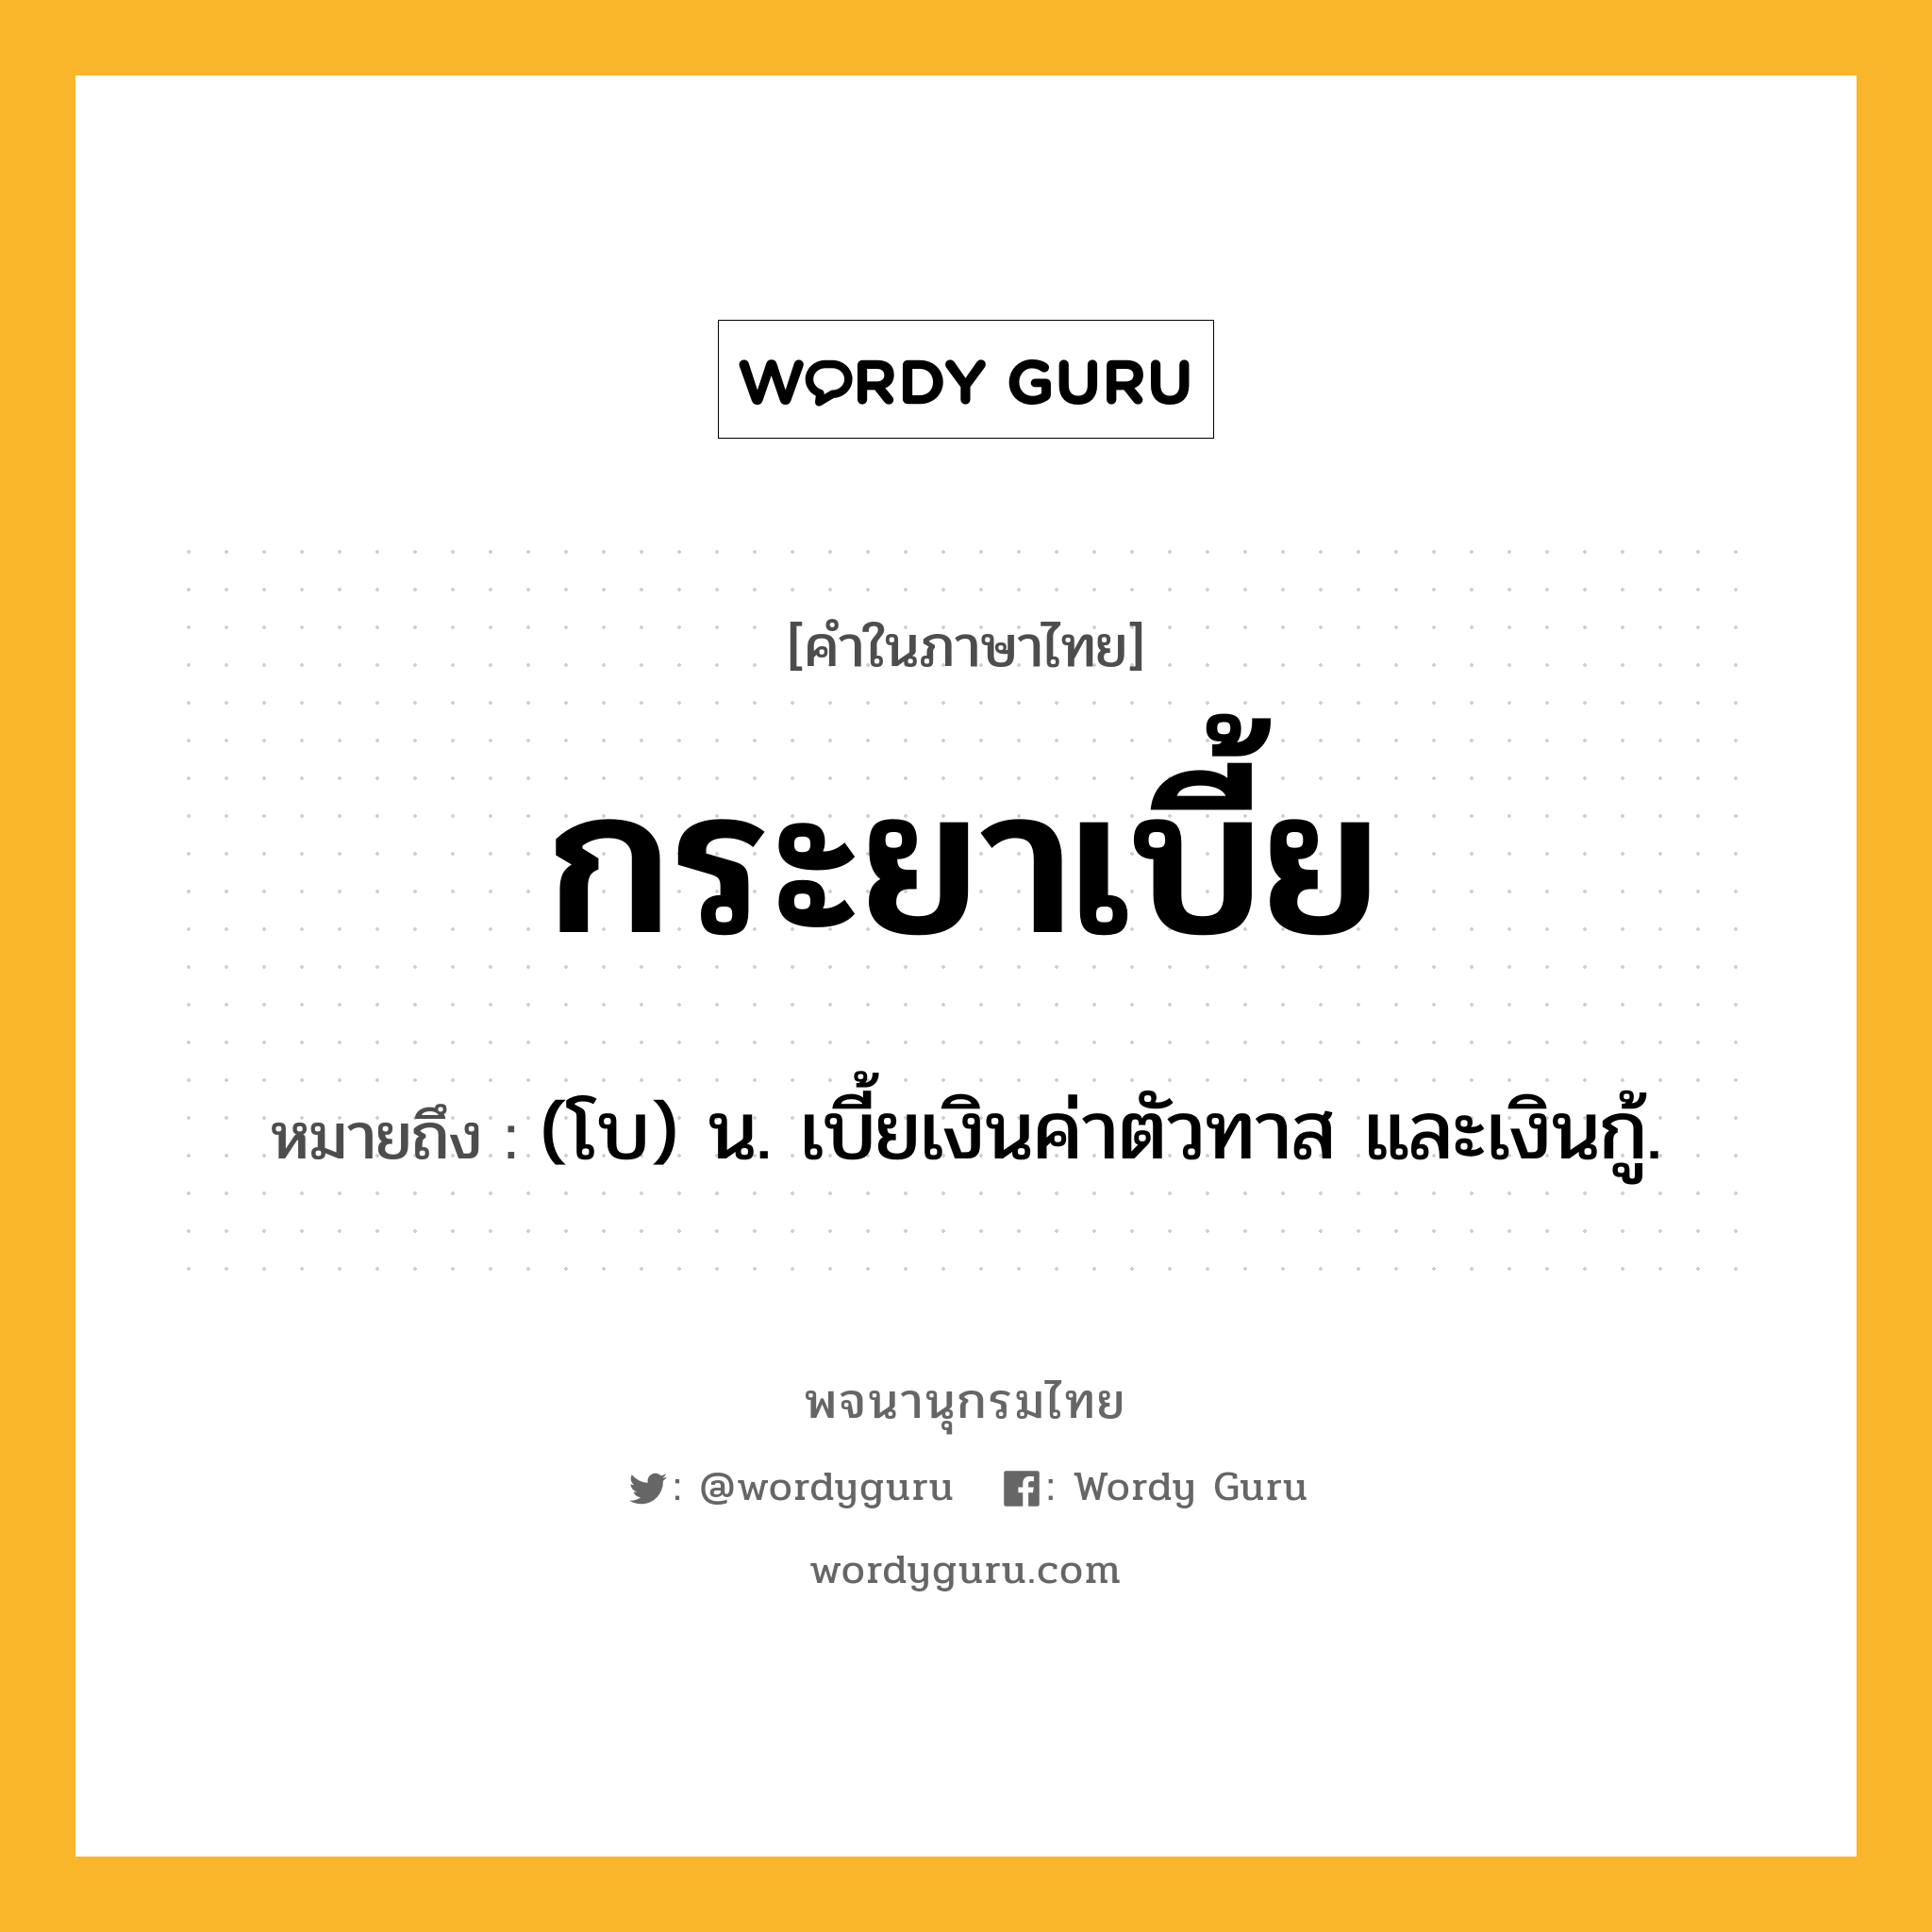 กระยาเบี้ย หมายถึงอะไร?, คำในภาษาไทย กระยาเบี้ย หมายถึง (โบ) น. เบี้ยเงินค่าตัวทาส และเงินกู้.